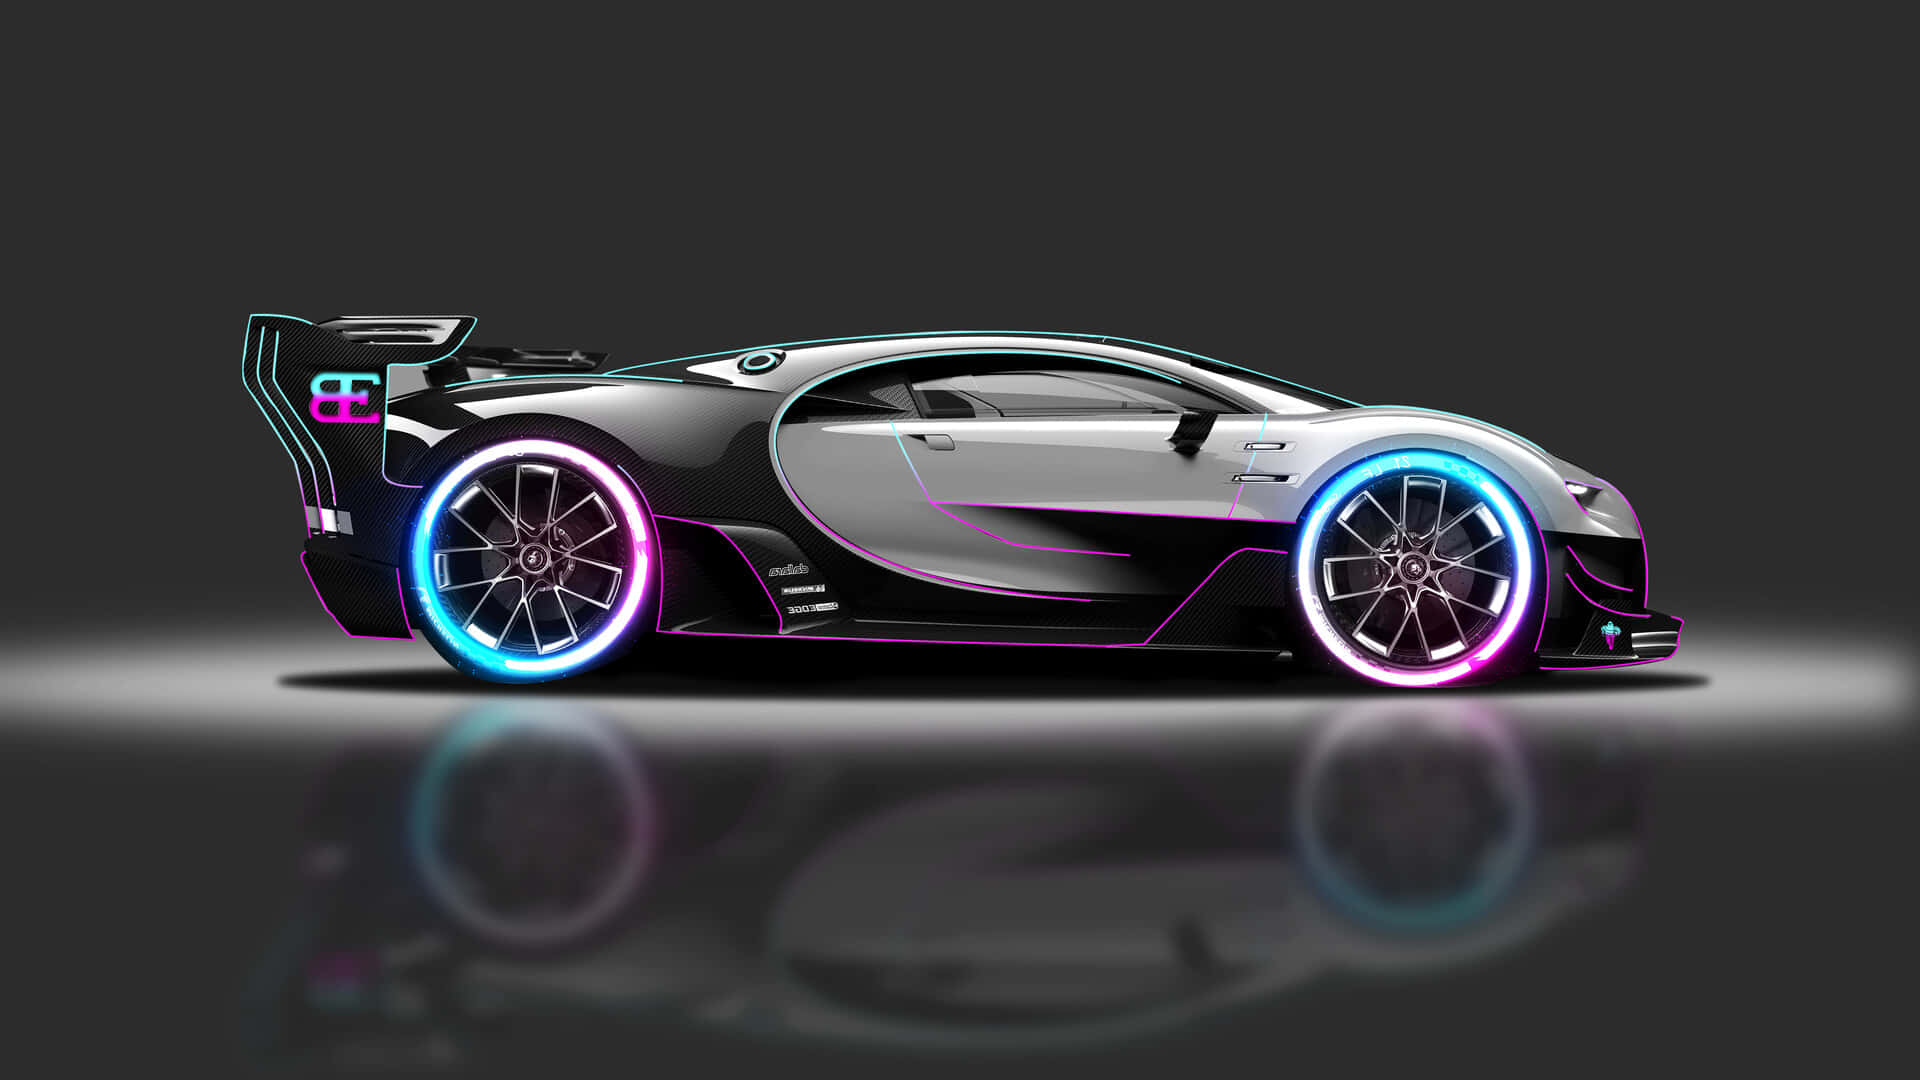 Observerade Lysande Färgerna På Neon Bugatti På Dator- Eller Mobilbakgrundsbilden. Wallpaper